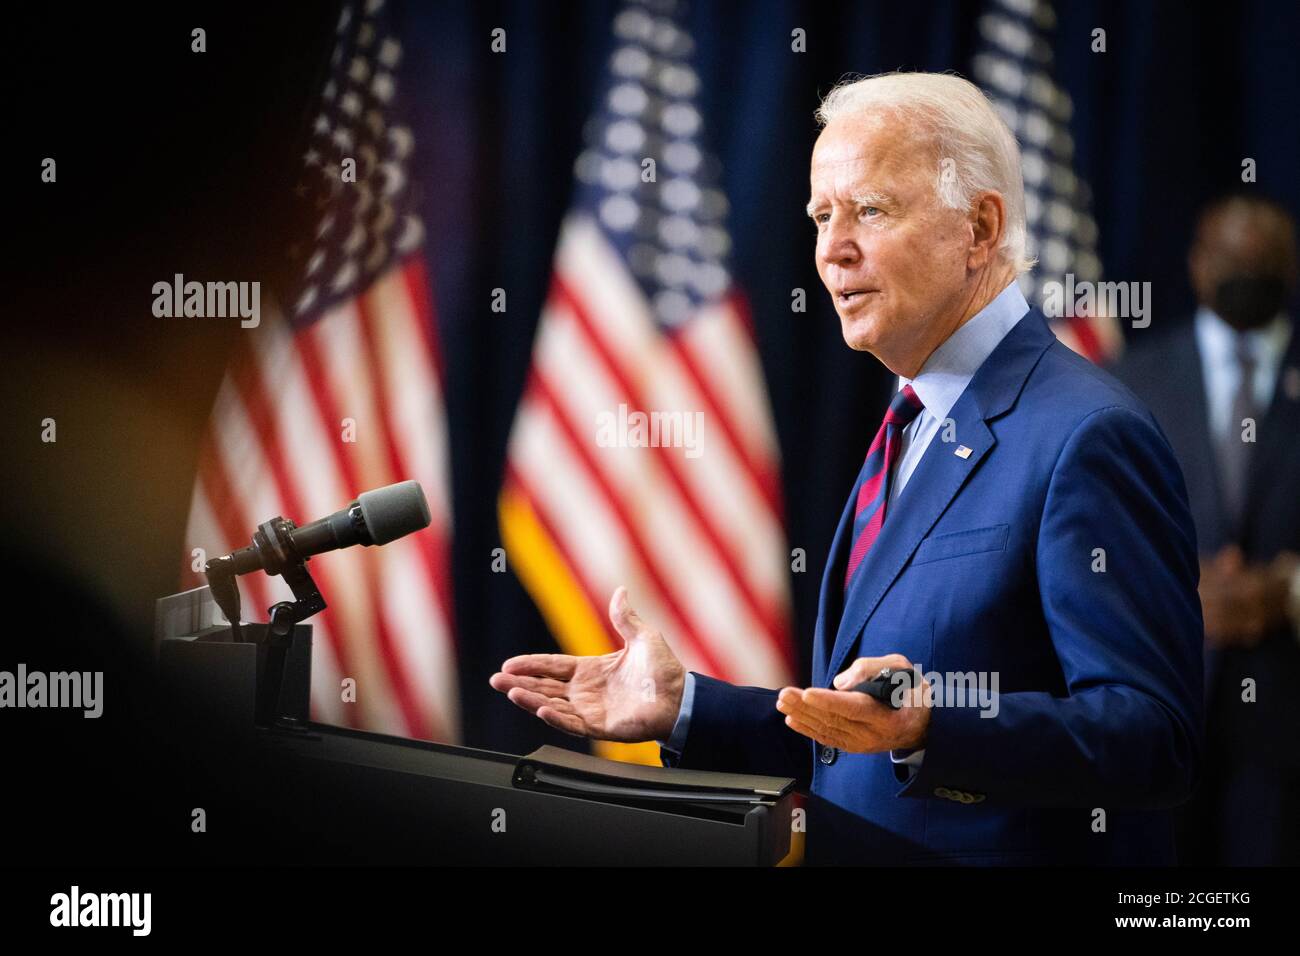 WILMINGTON, PA, Etats-Unis - 04 septembre 2020 - Joe Biden, candidat démocrate à la présidence des Etats-Unis, lors d'une conférence de presse sur « l'état de l'économie américaine annd Job » Banque D'Images